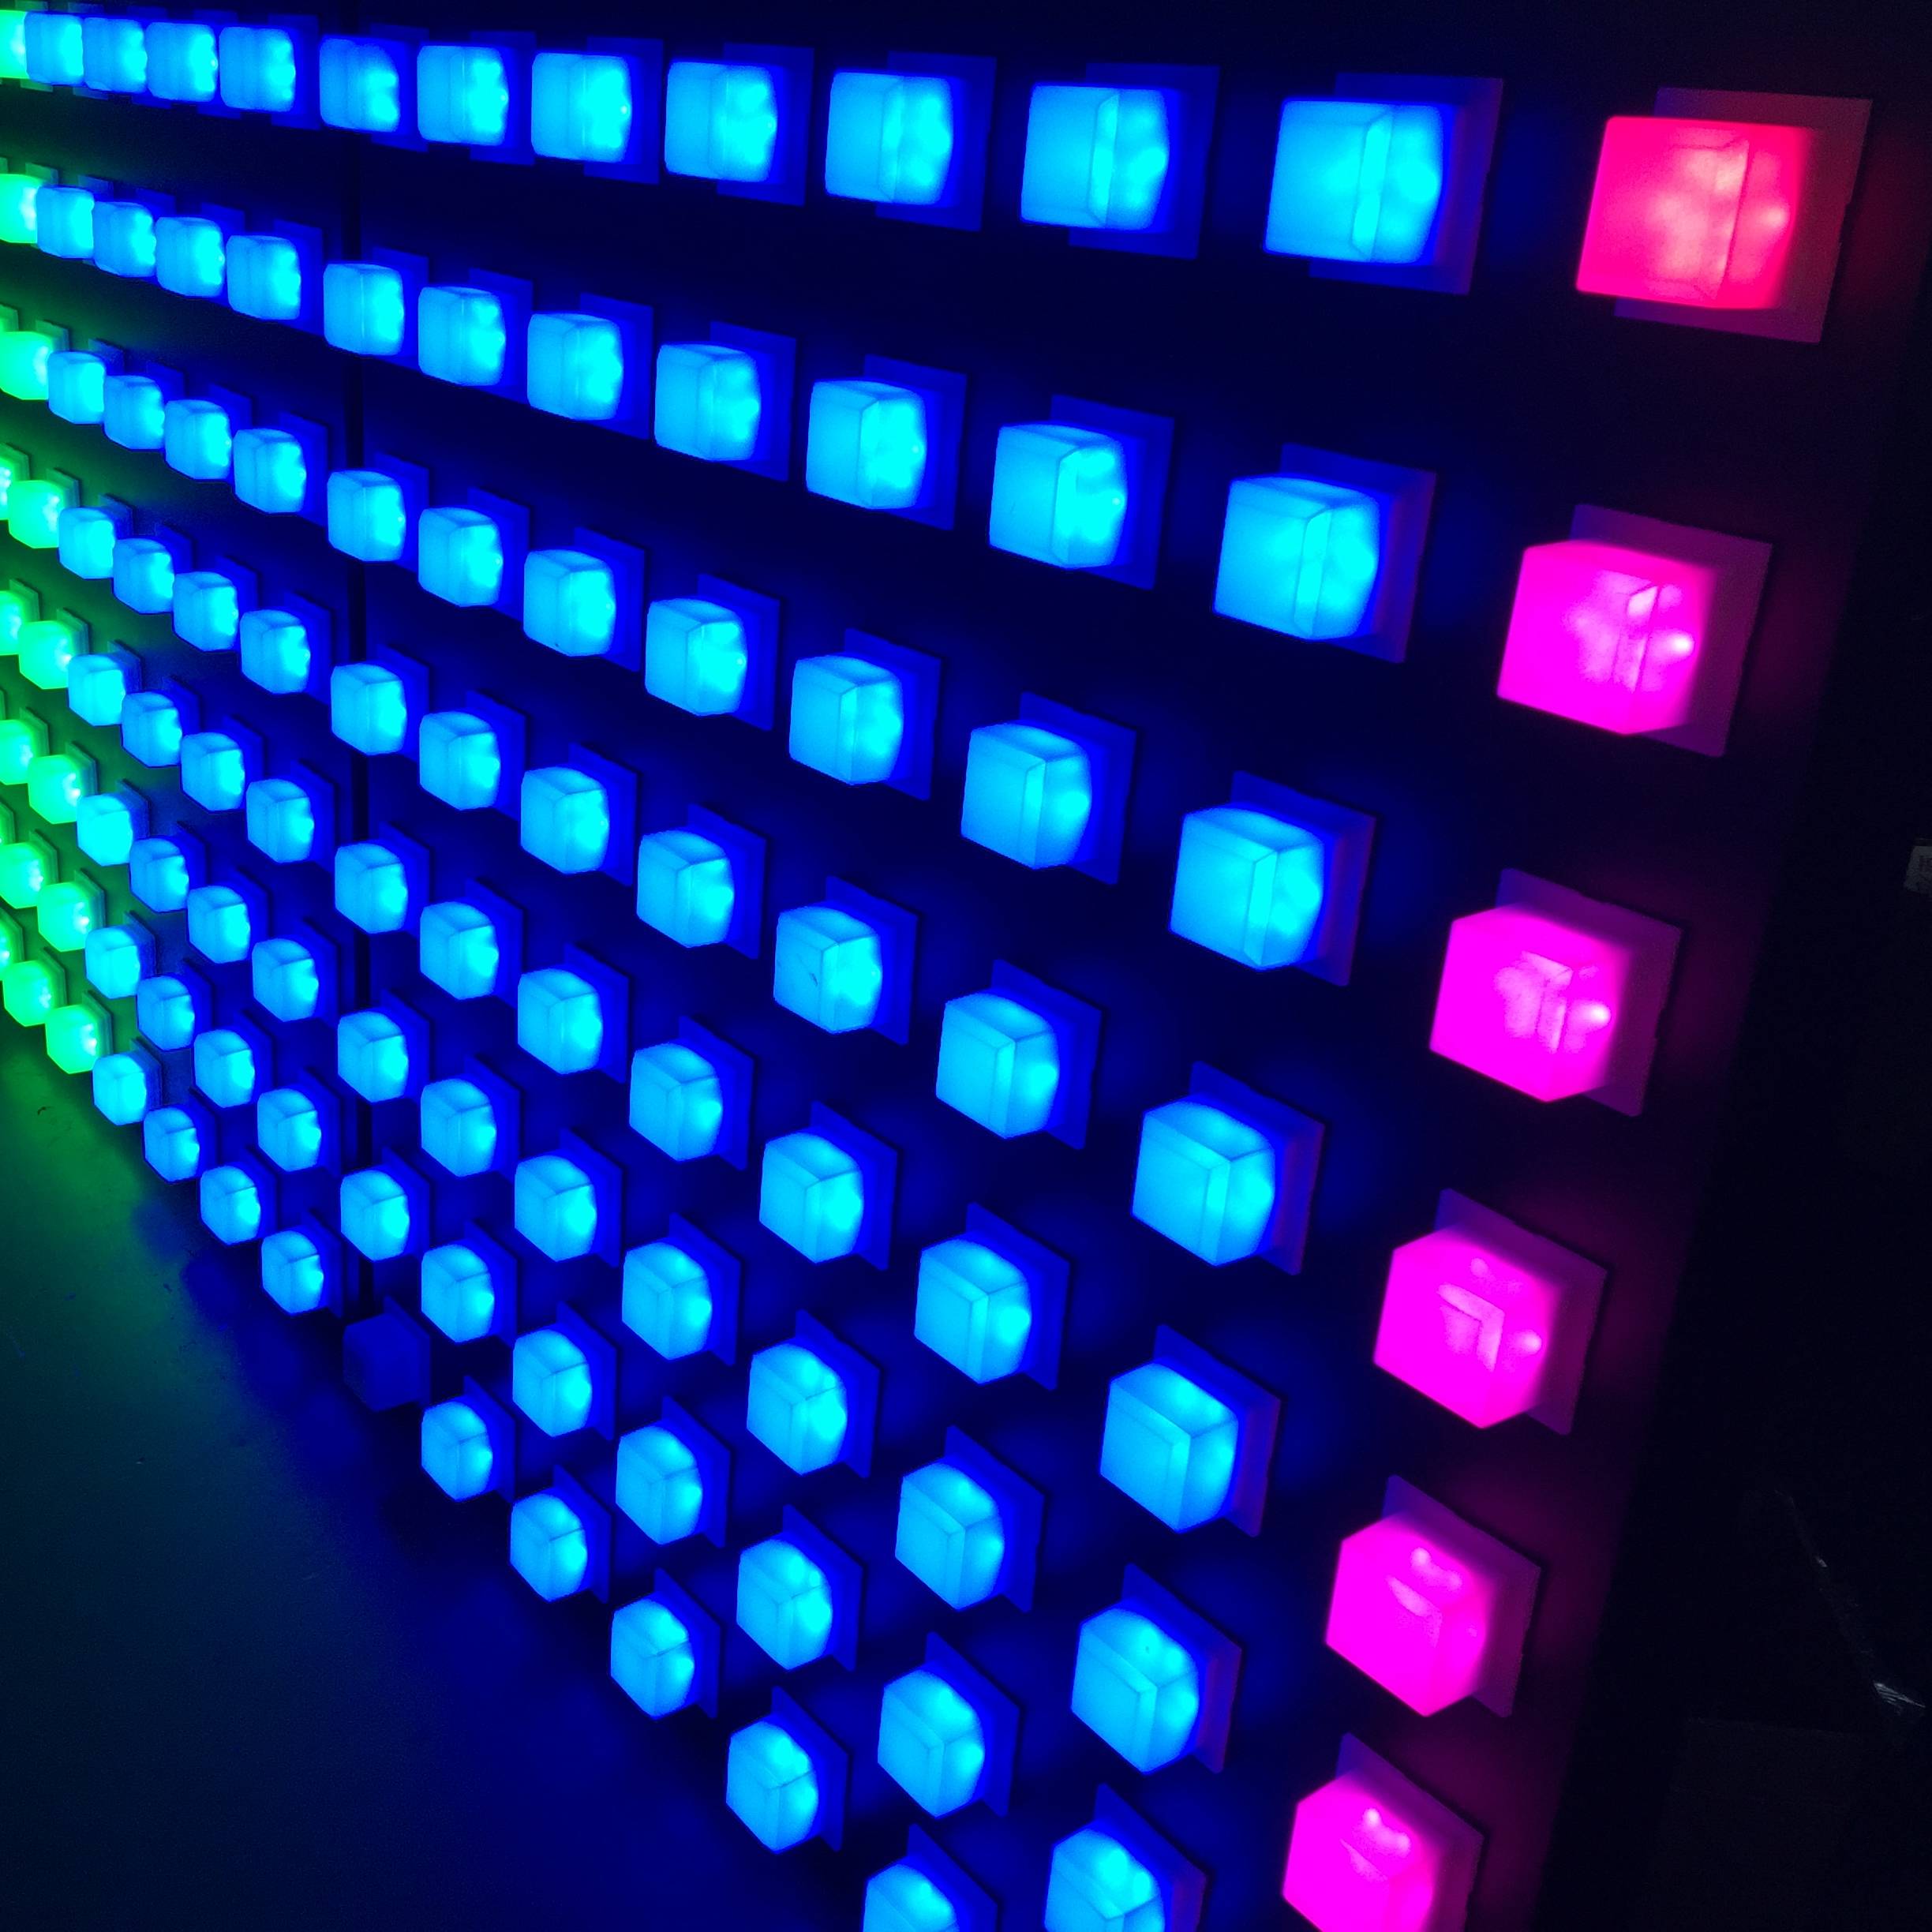 RGB ಪೂರ್ಣ ಬಣ್ಣ SMD 5050 ನೇತೃತ್ವದ ಹಂತಗಳ ದೀಪಗಳು ಪಿಕ್ಸೆಲ್ ಬೆಳಕಿನ DVI ವೀಡಿಯೊ ಪ್ರದರ್ಶನಗಳ ಪರದೆ